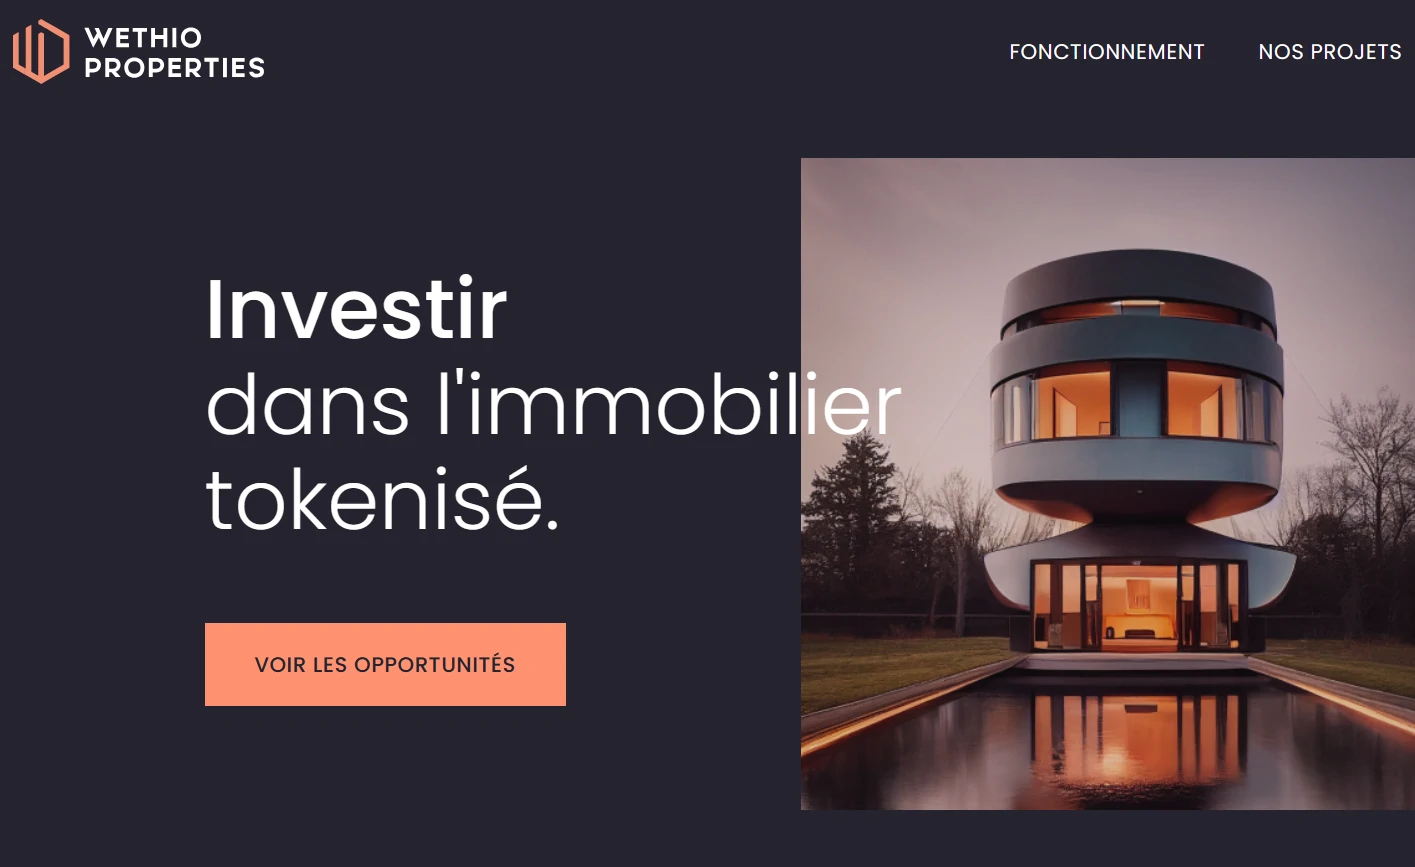 Investissement immobilier tokenisé - WethioProperties Arnaque Exposée